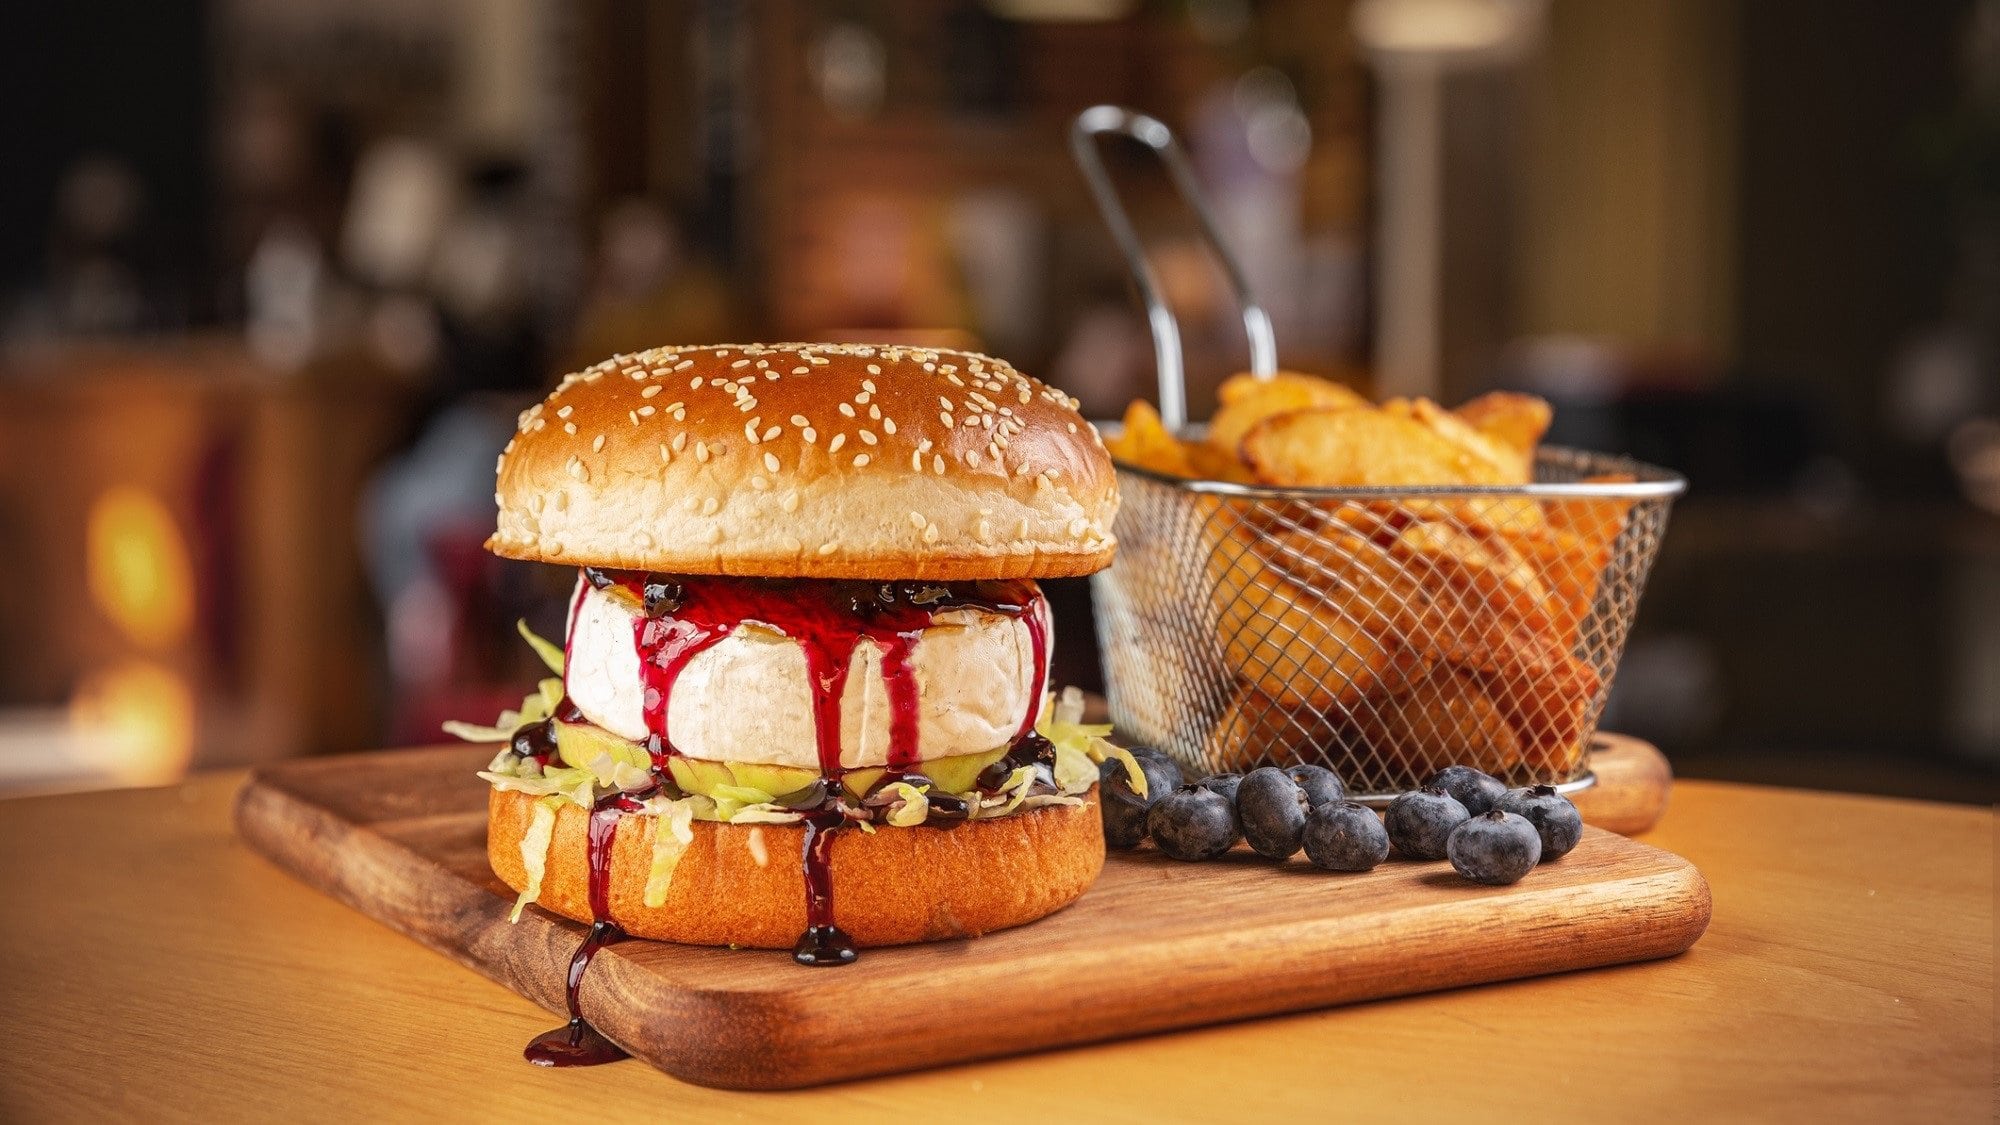 Ein Burger mit Camembert und Blaubeersauce steht auf einem Holzbrett. Der Burger ist zusätzlich angerichtet mit Ananas und Salat. Um den Burger herum liegen Blaubeeren, am Rand des Bretts steht ein Sieb mit frittierten Kartoffeln.